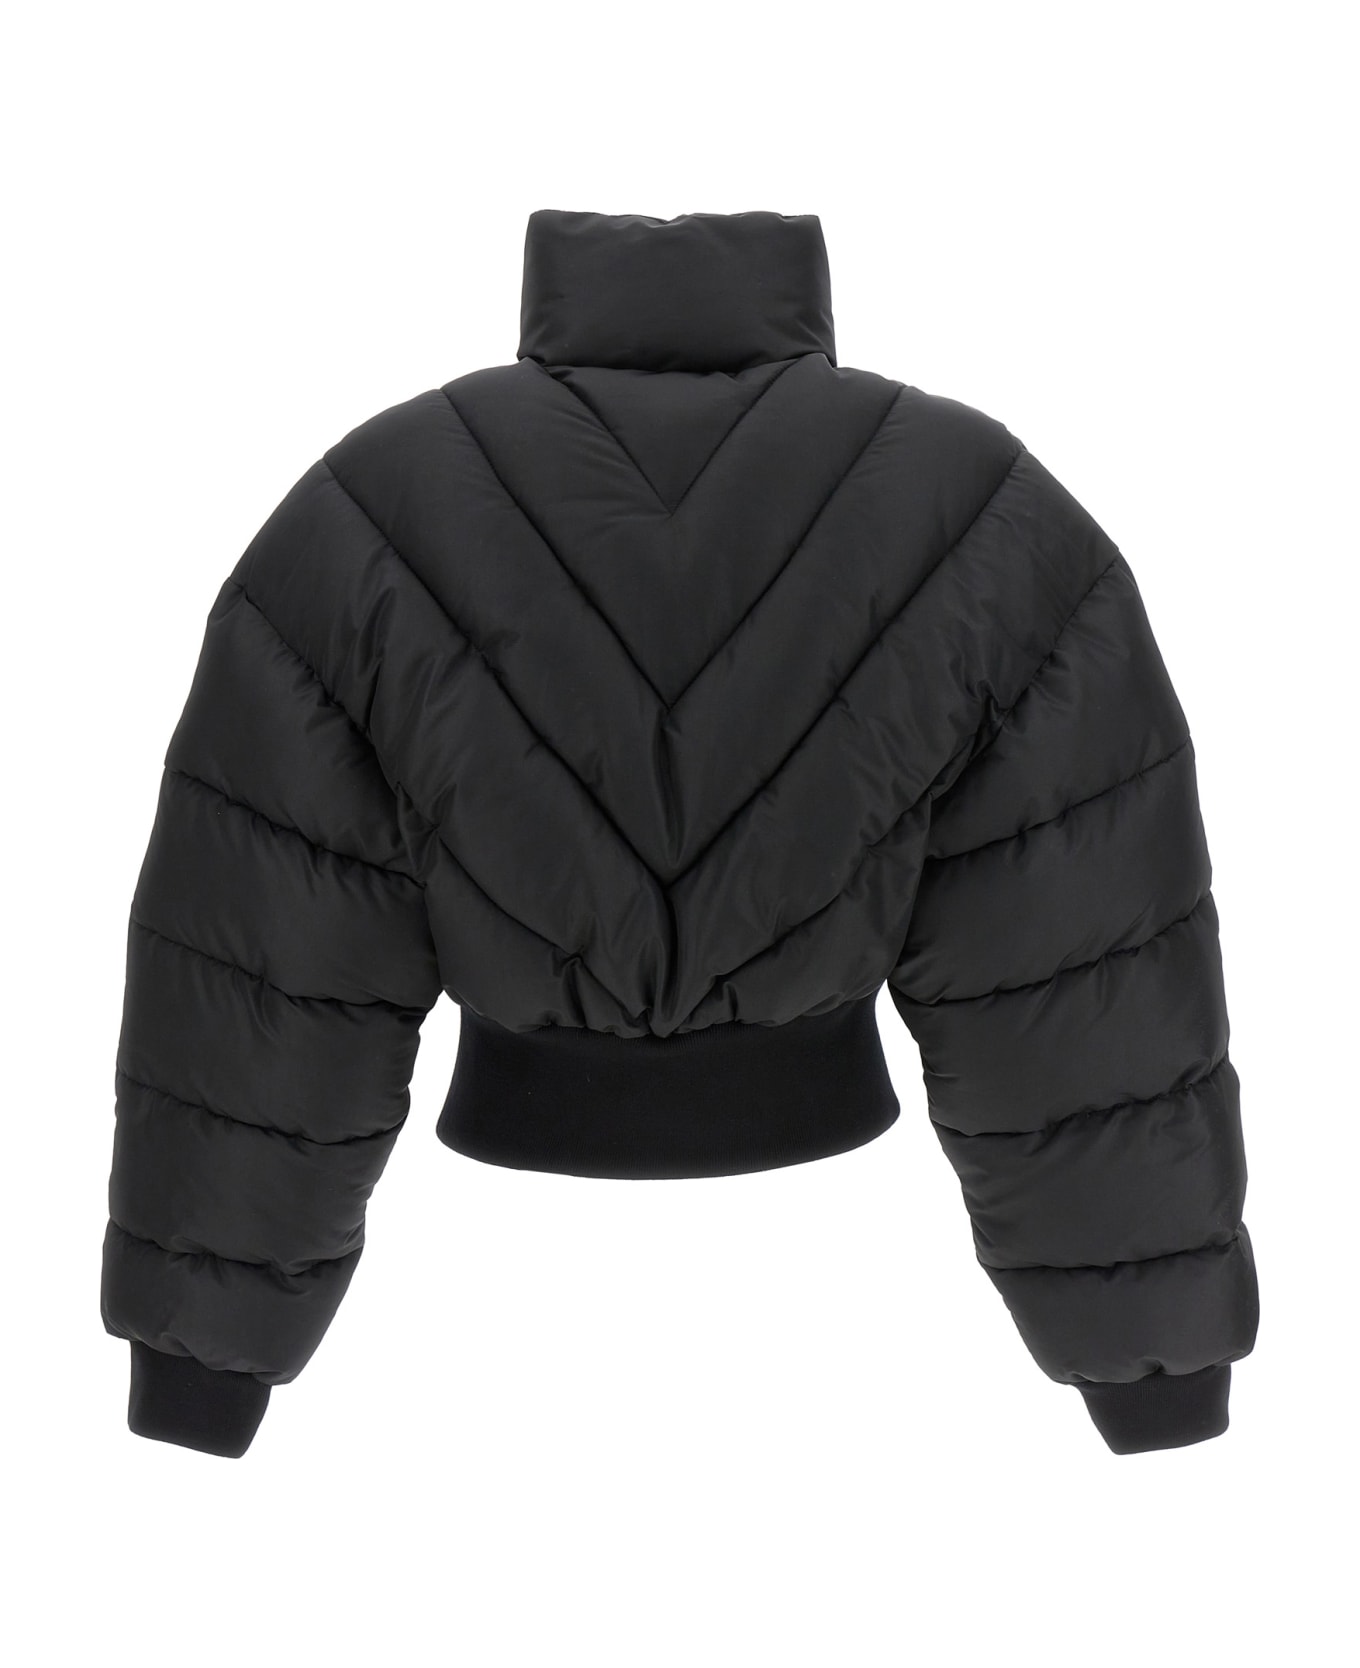 Mugler Cropped Puffer Jacket - Black  